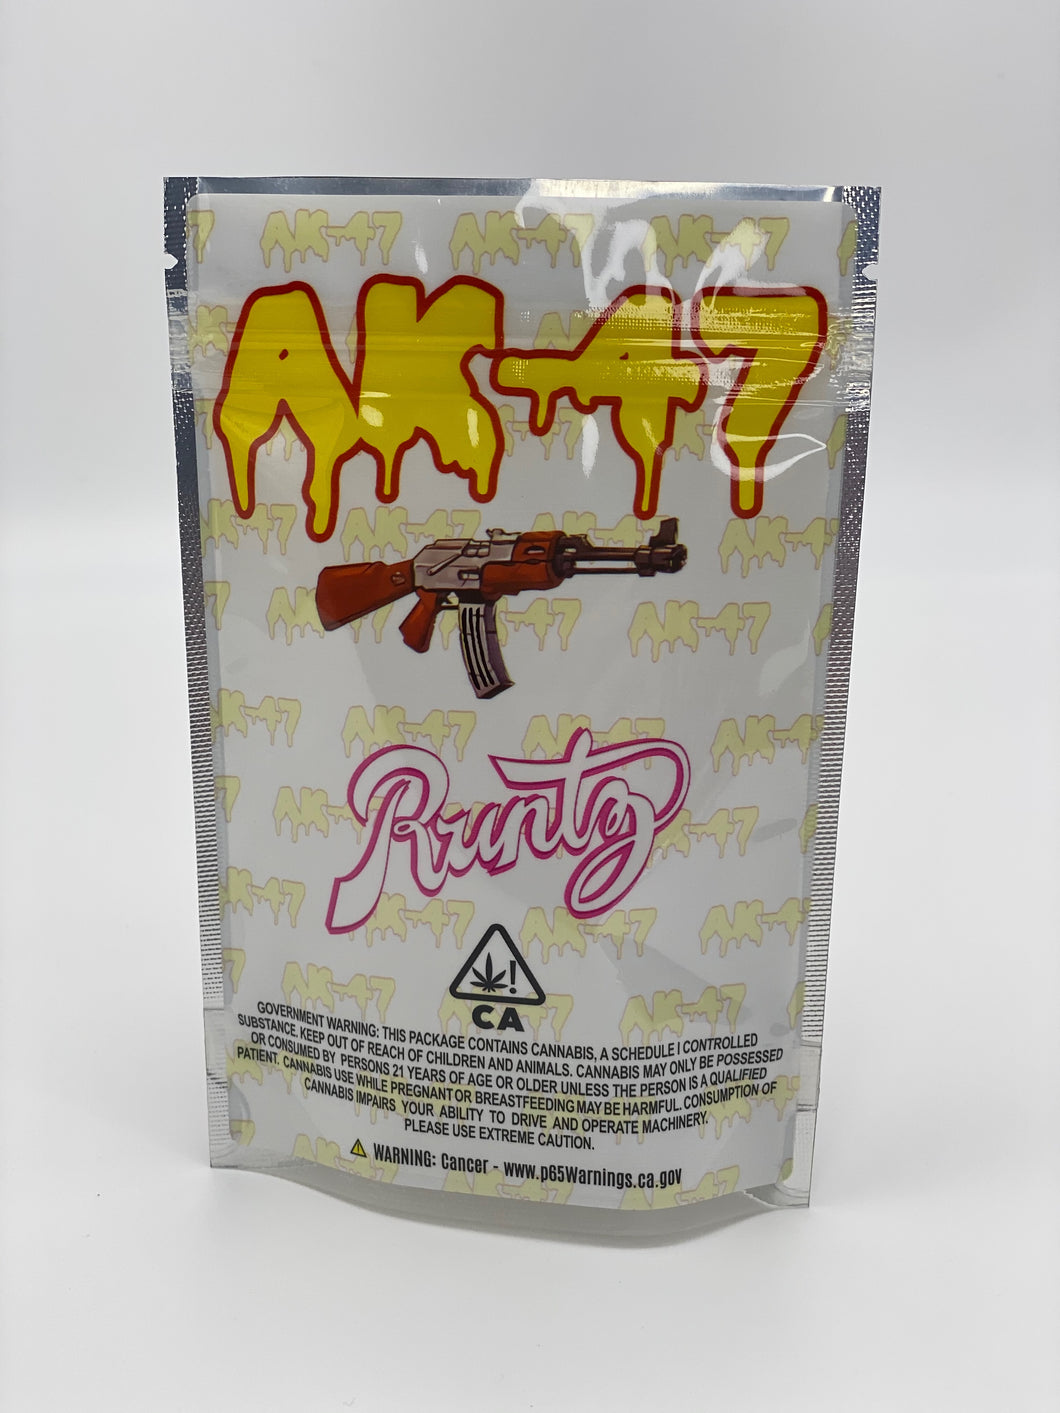 AK-47 Runtz Empty 3.5 gram